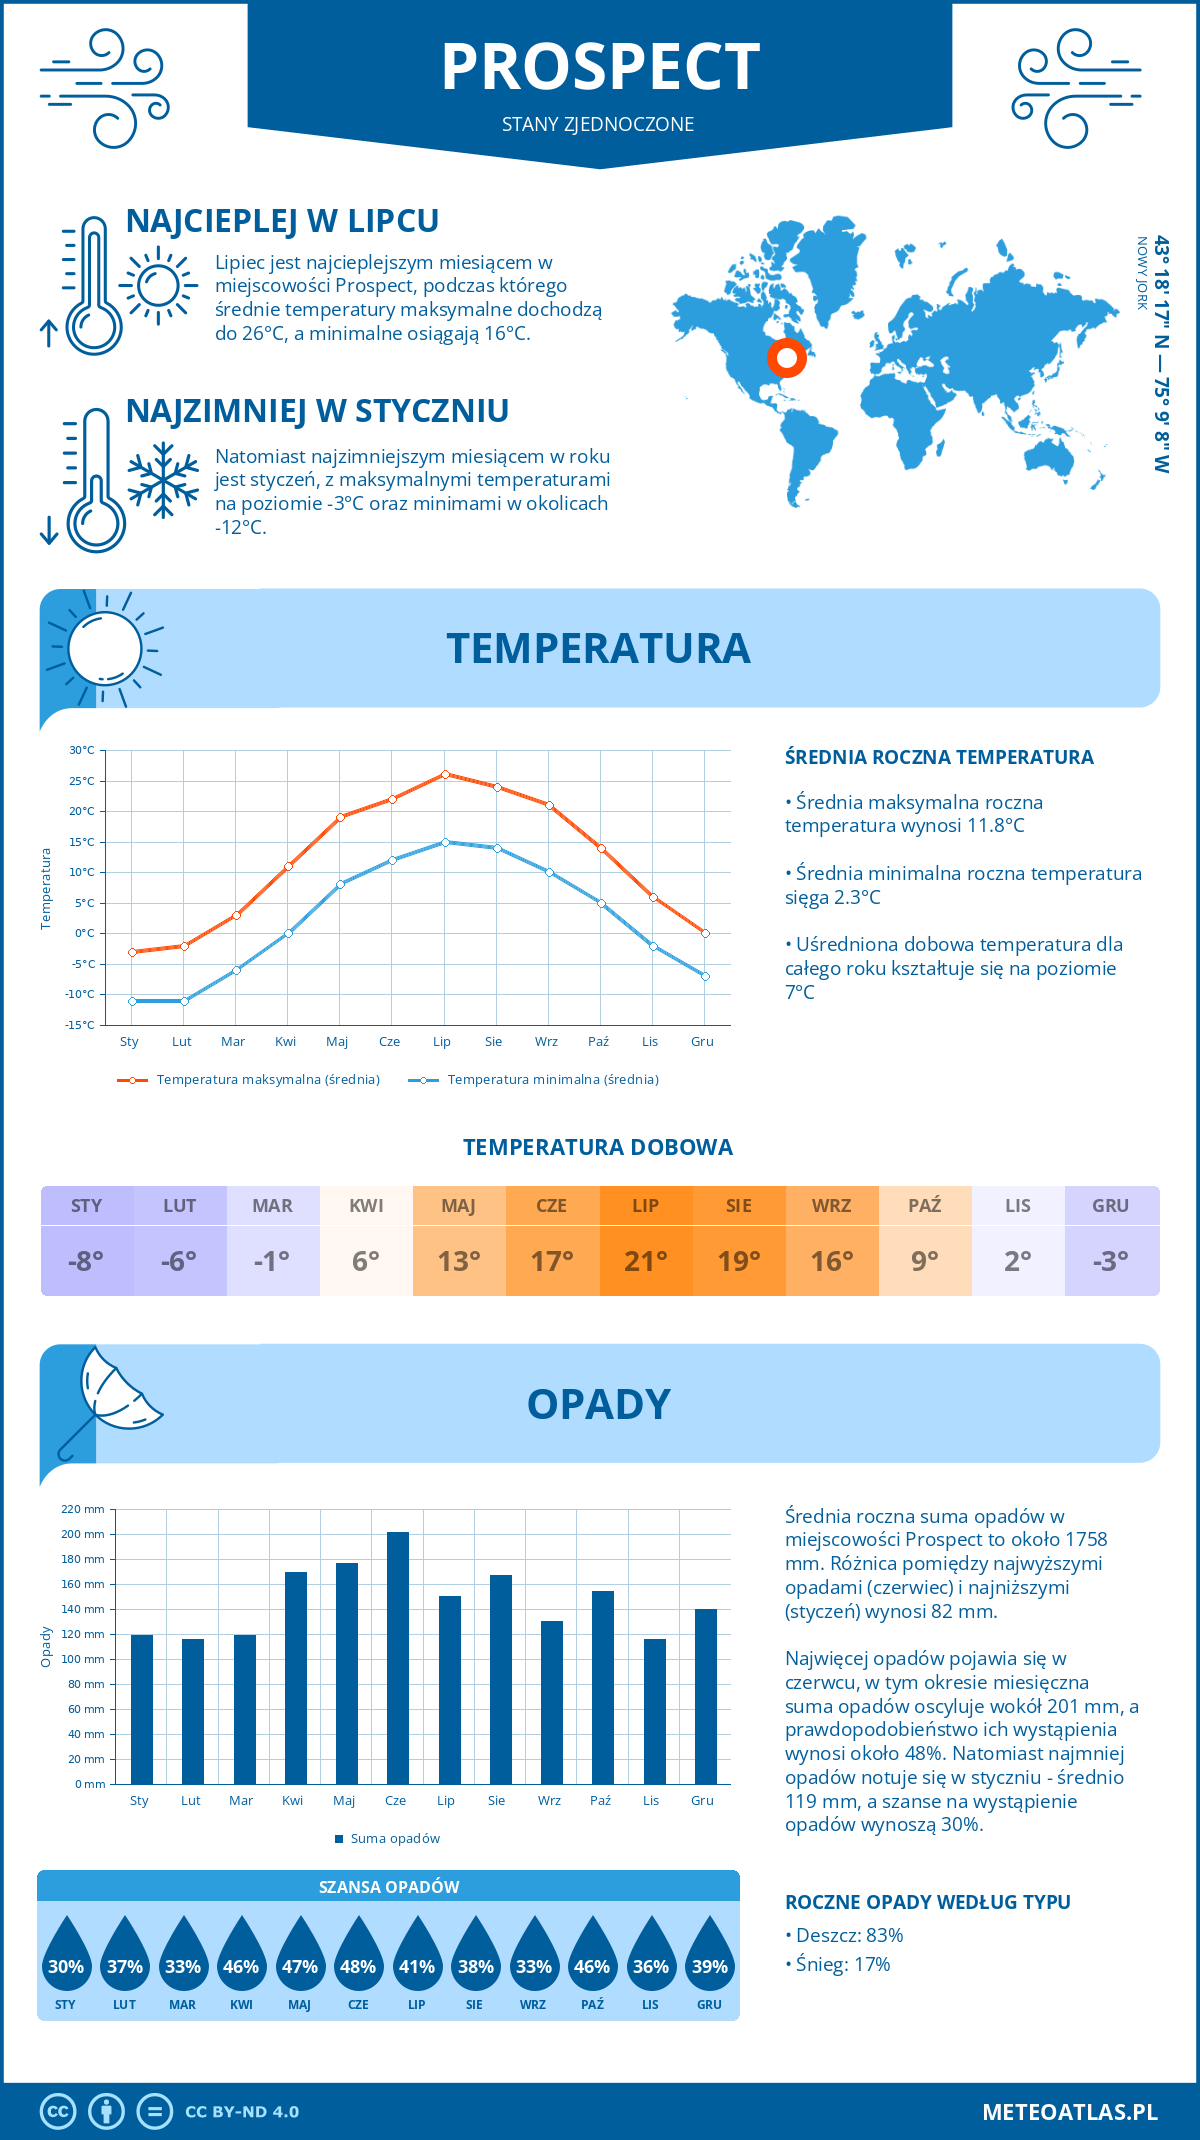 Pogoda Prospect (Stany Zjednoczone). Temperatura oraz opady.